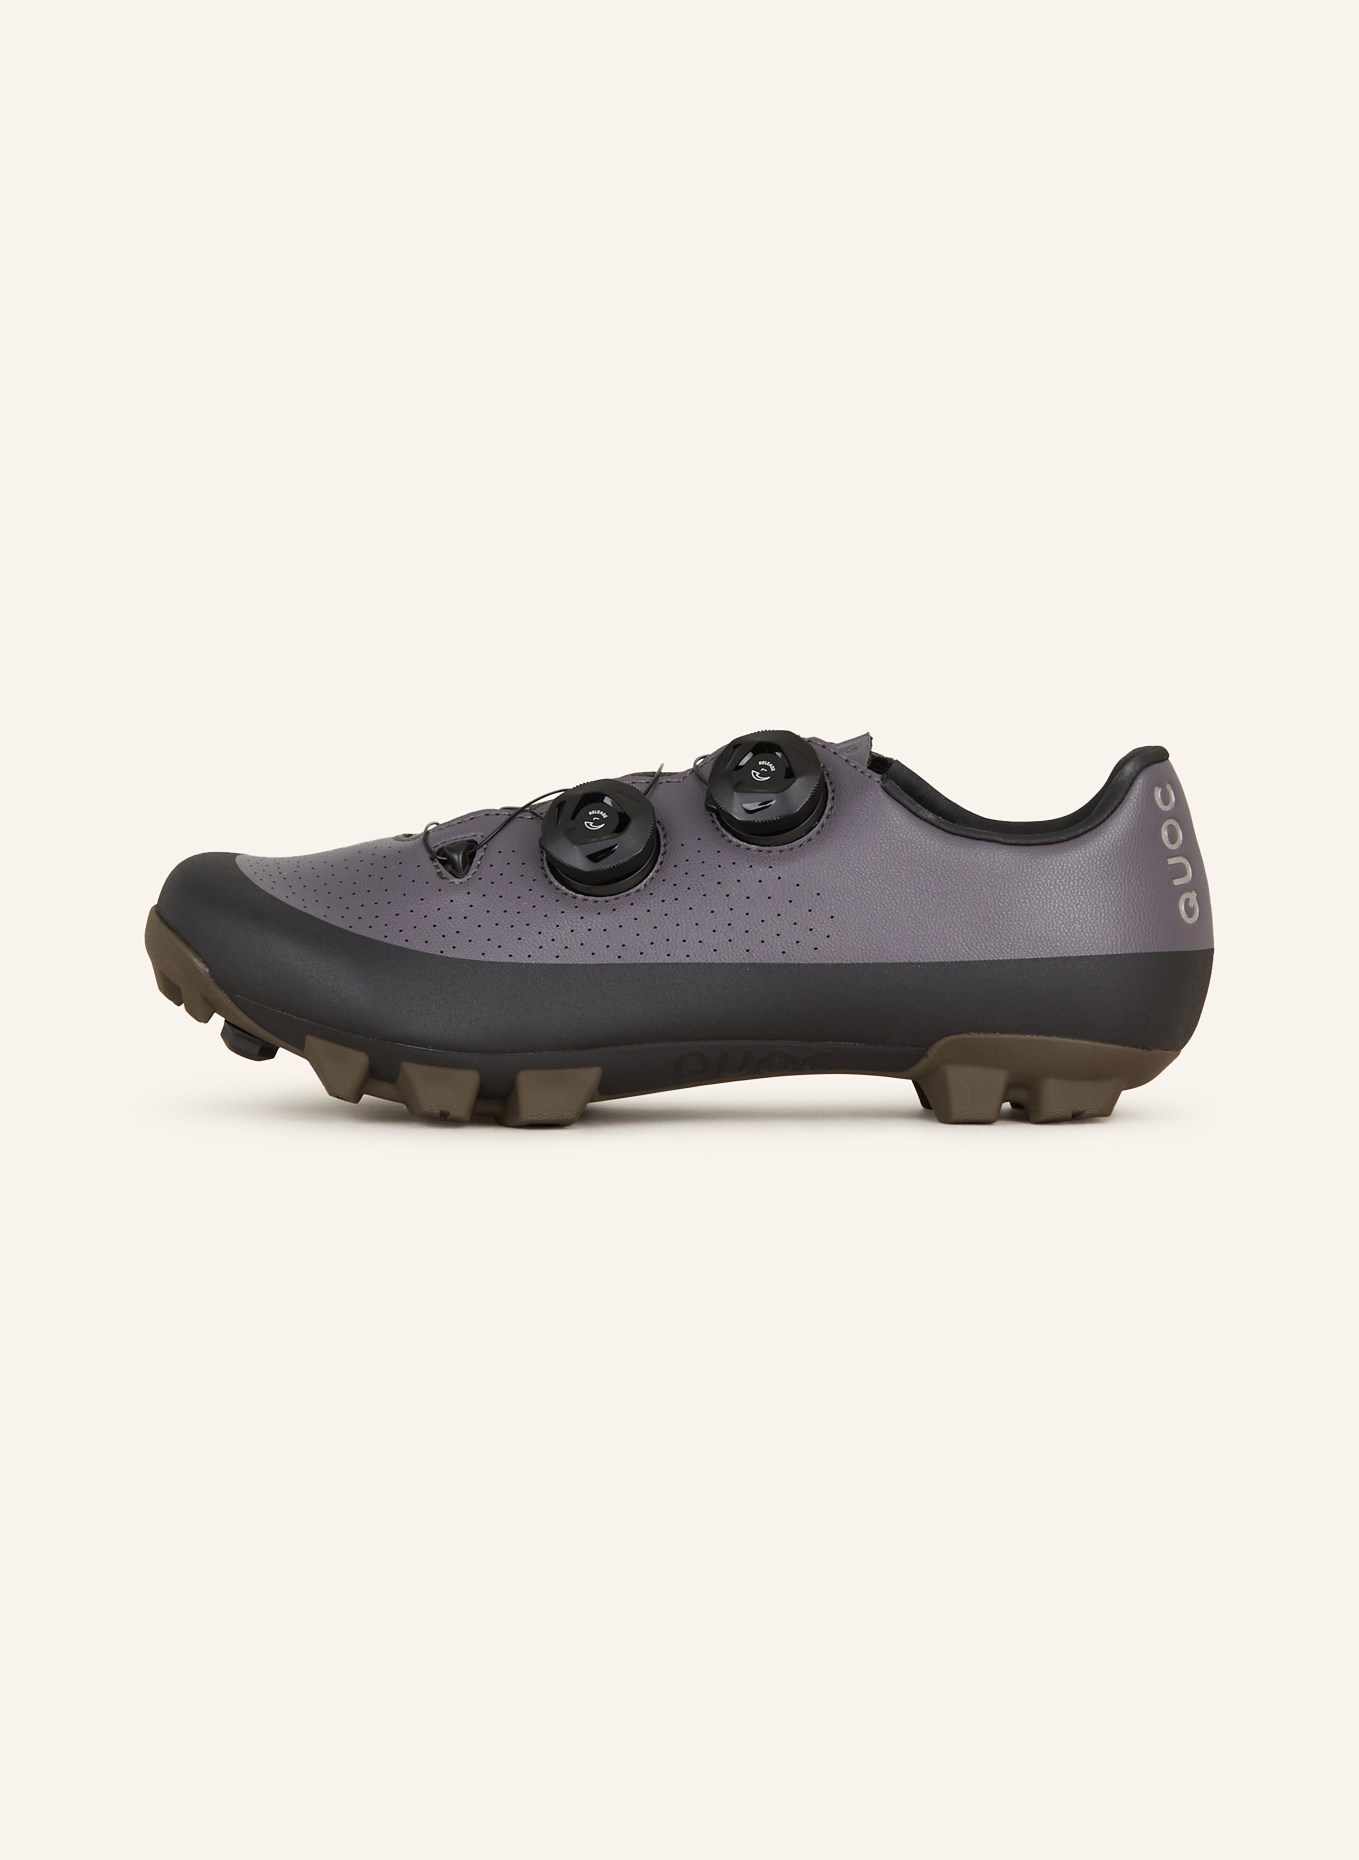 QUOC Gravel bike shoes GRAN TOURER XC, Color: GRAY/ BLACK (Image 4)